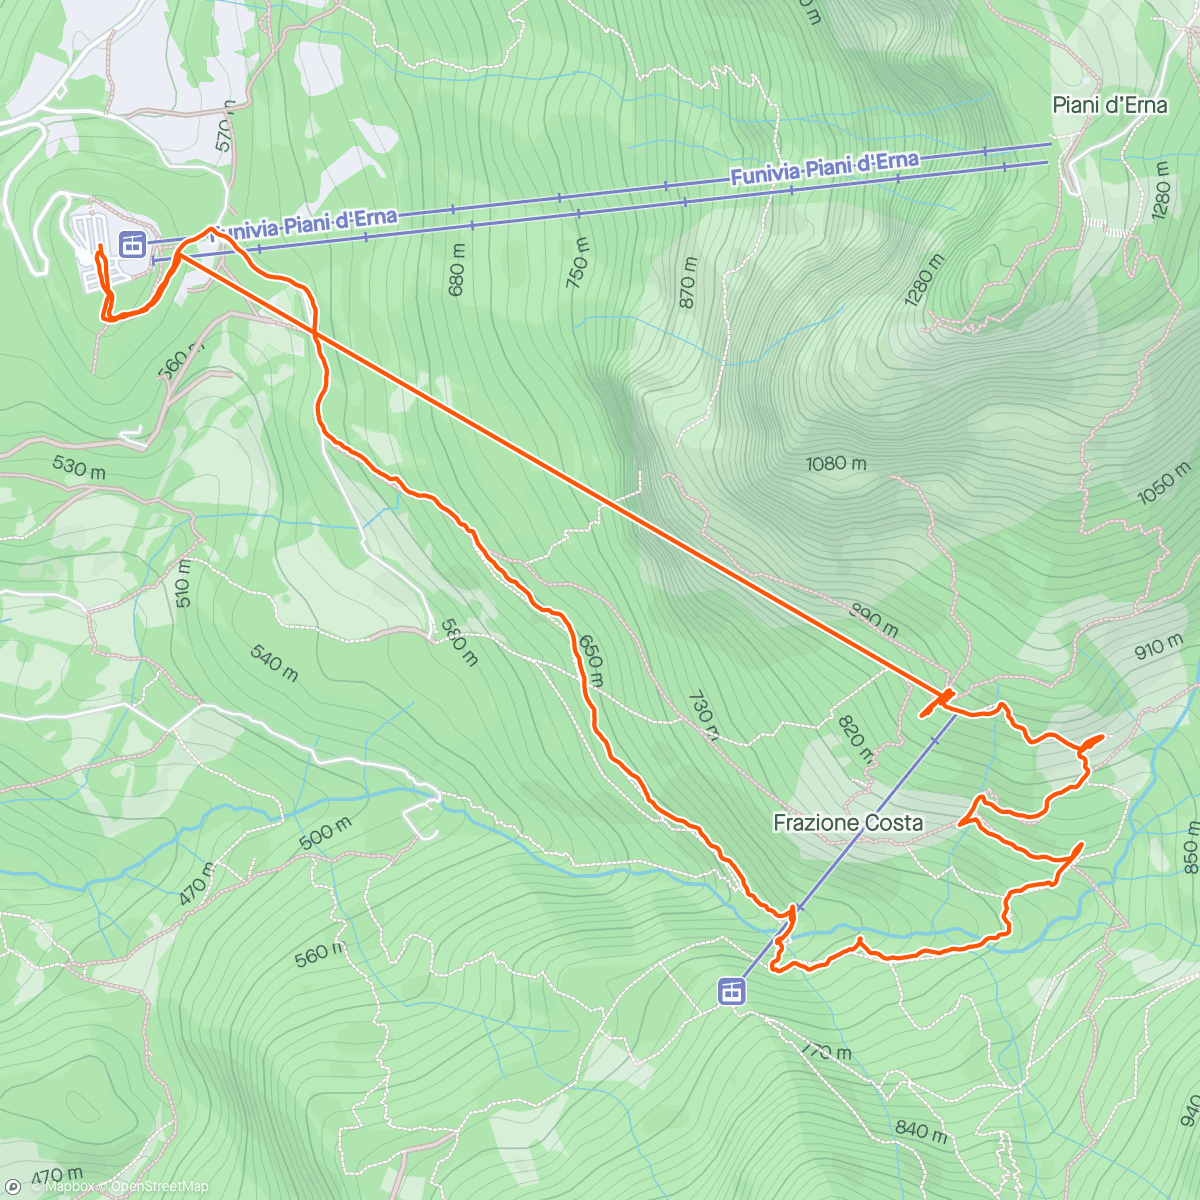 「Rifugio Stoppani」活動的地圖